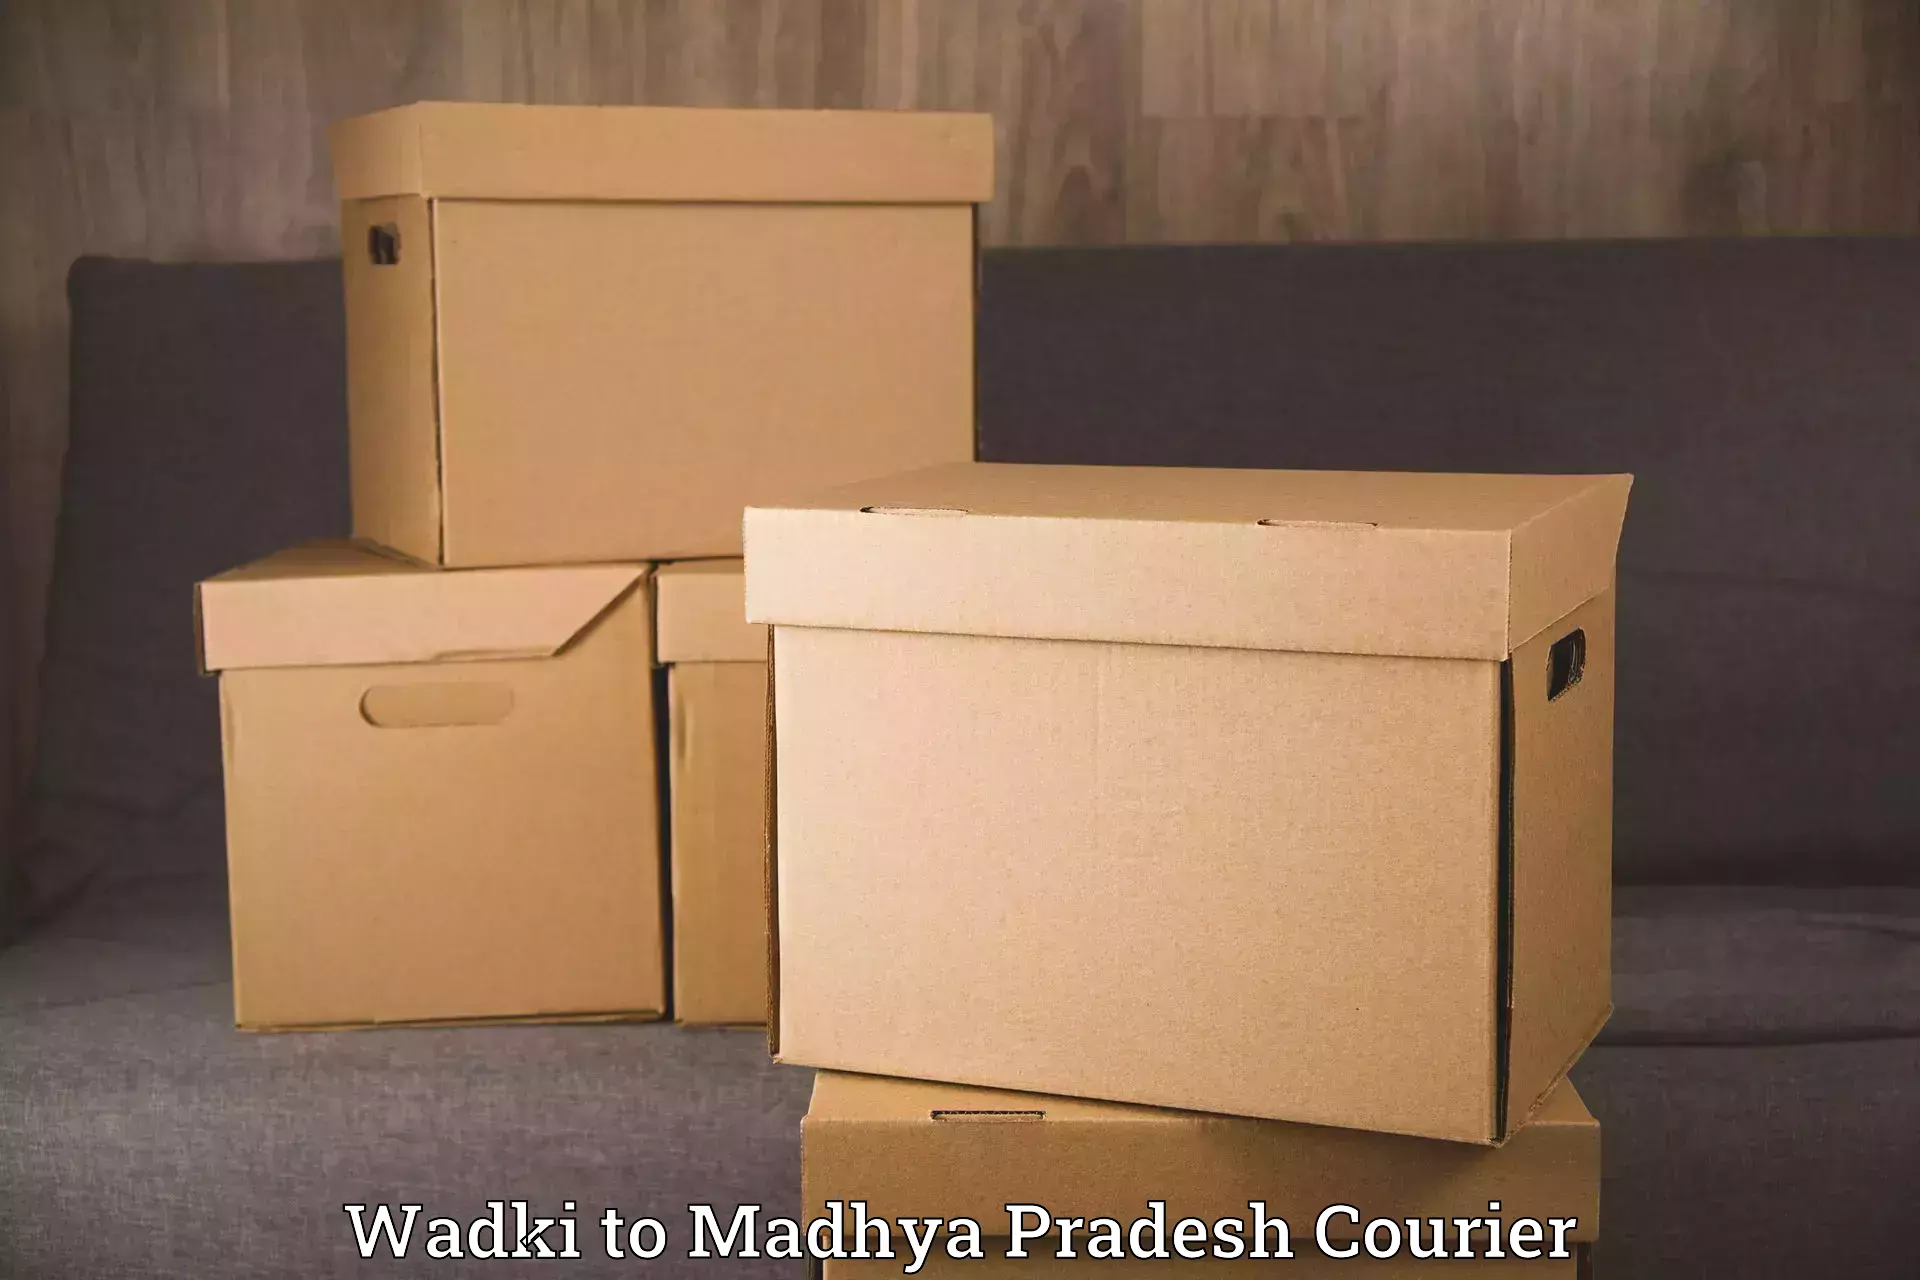 Household transport experts Wadki to Madhya Pradesh